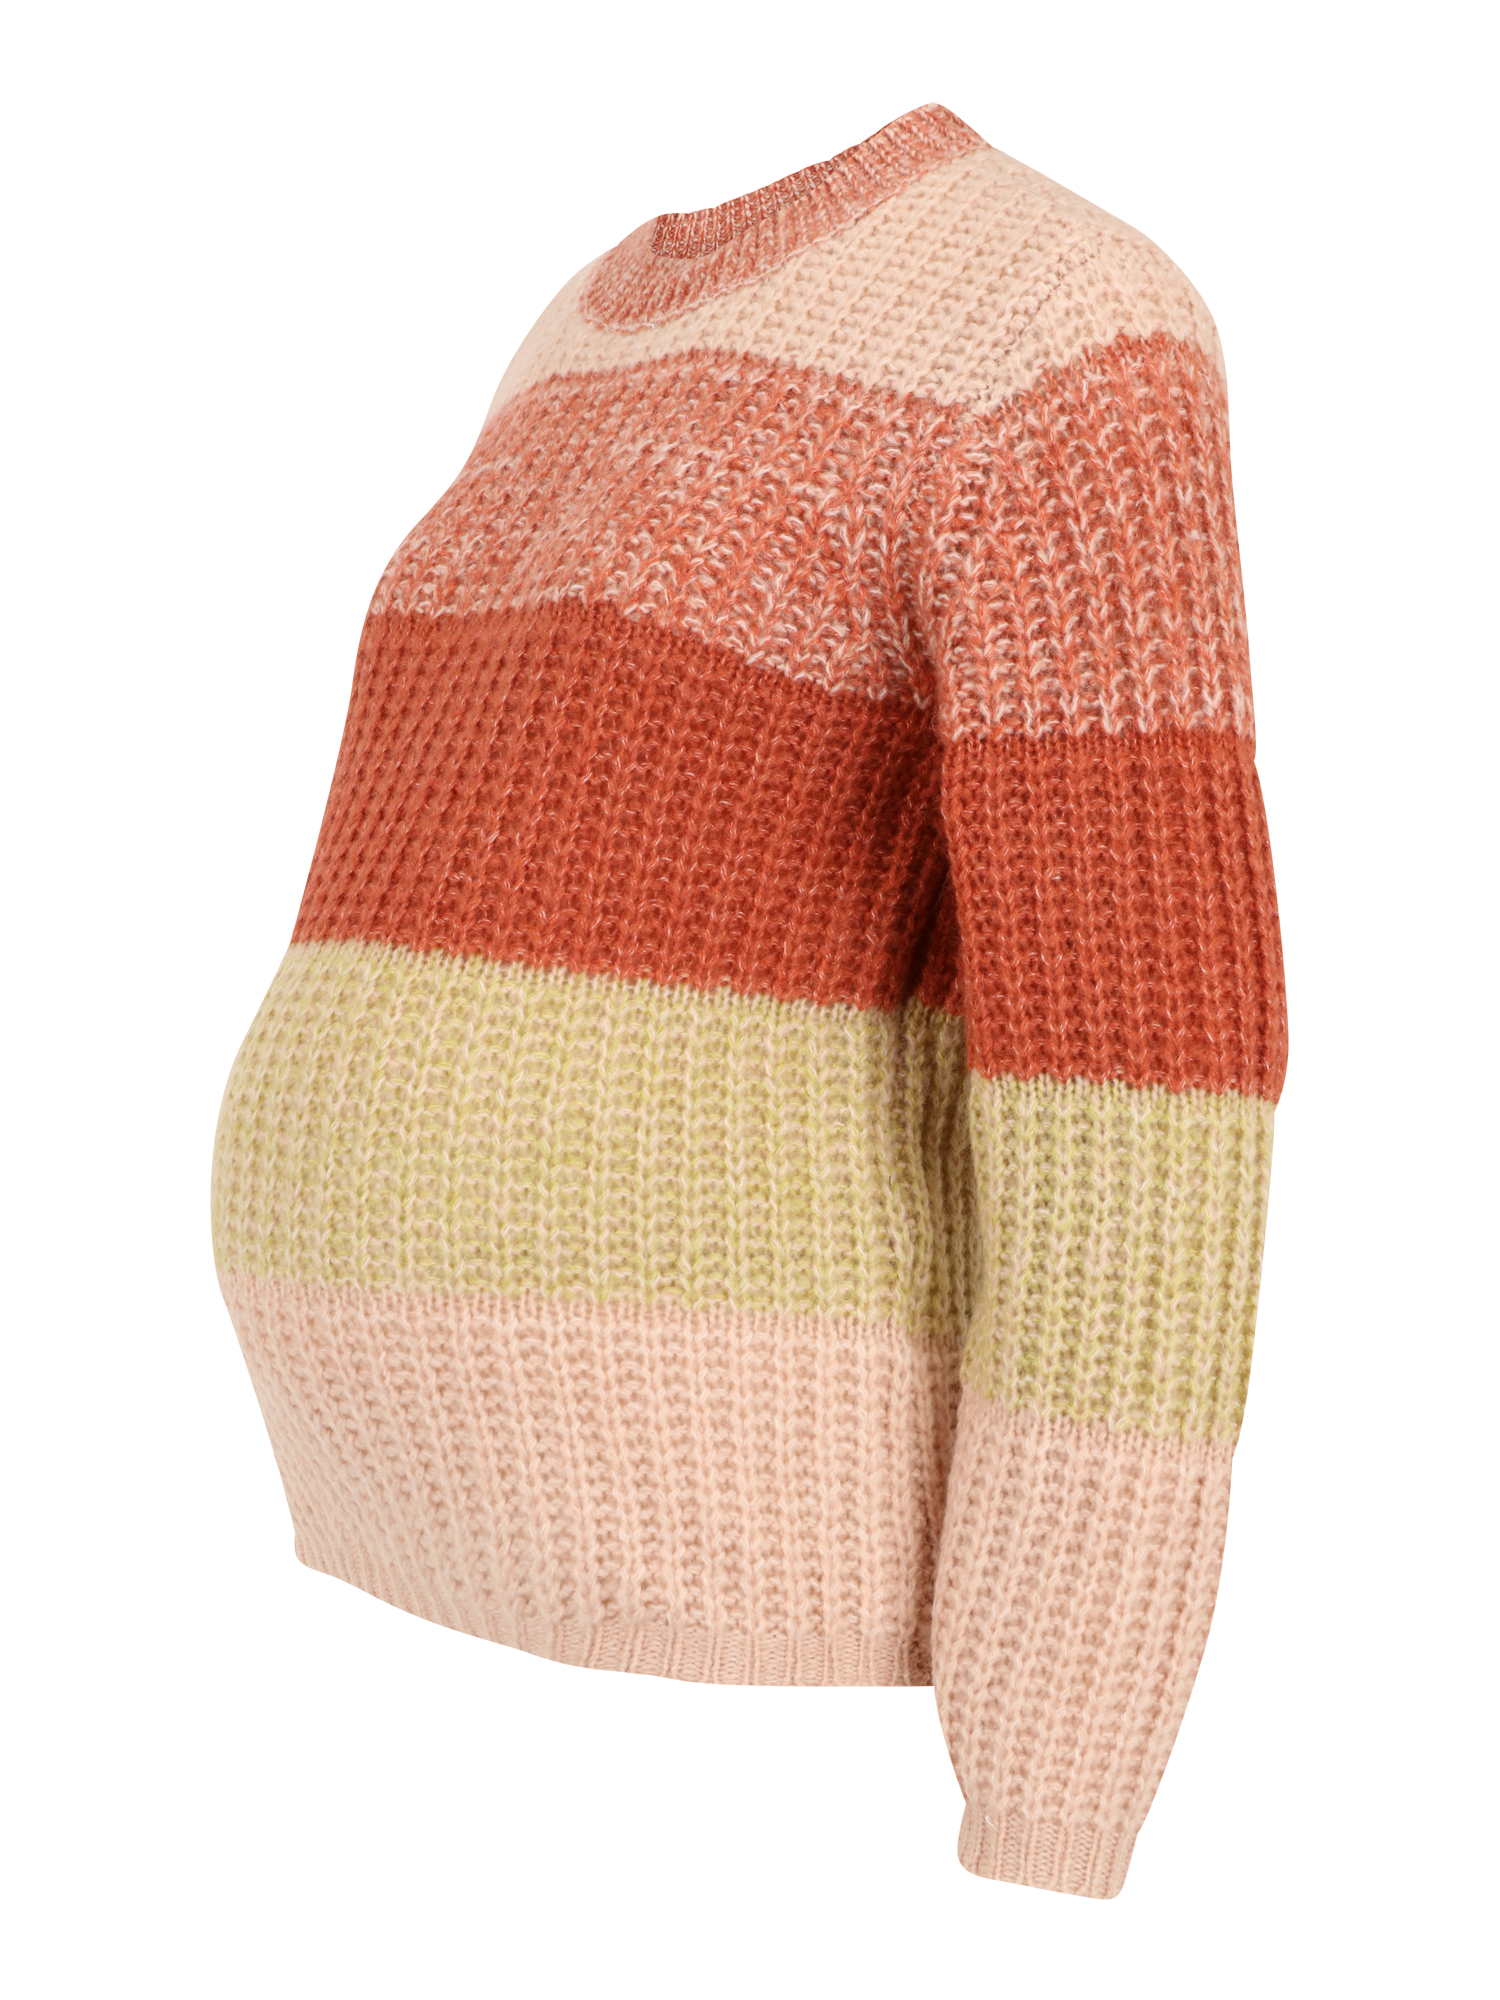 Pieces Maternity Sweter Ena w kolorze Nakrapiany Czerwony, Rdzawoczerwony, Różowy Pudrowym 